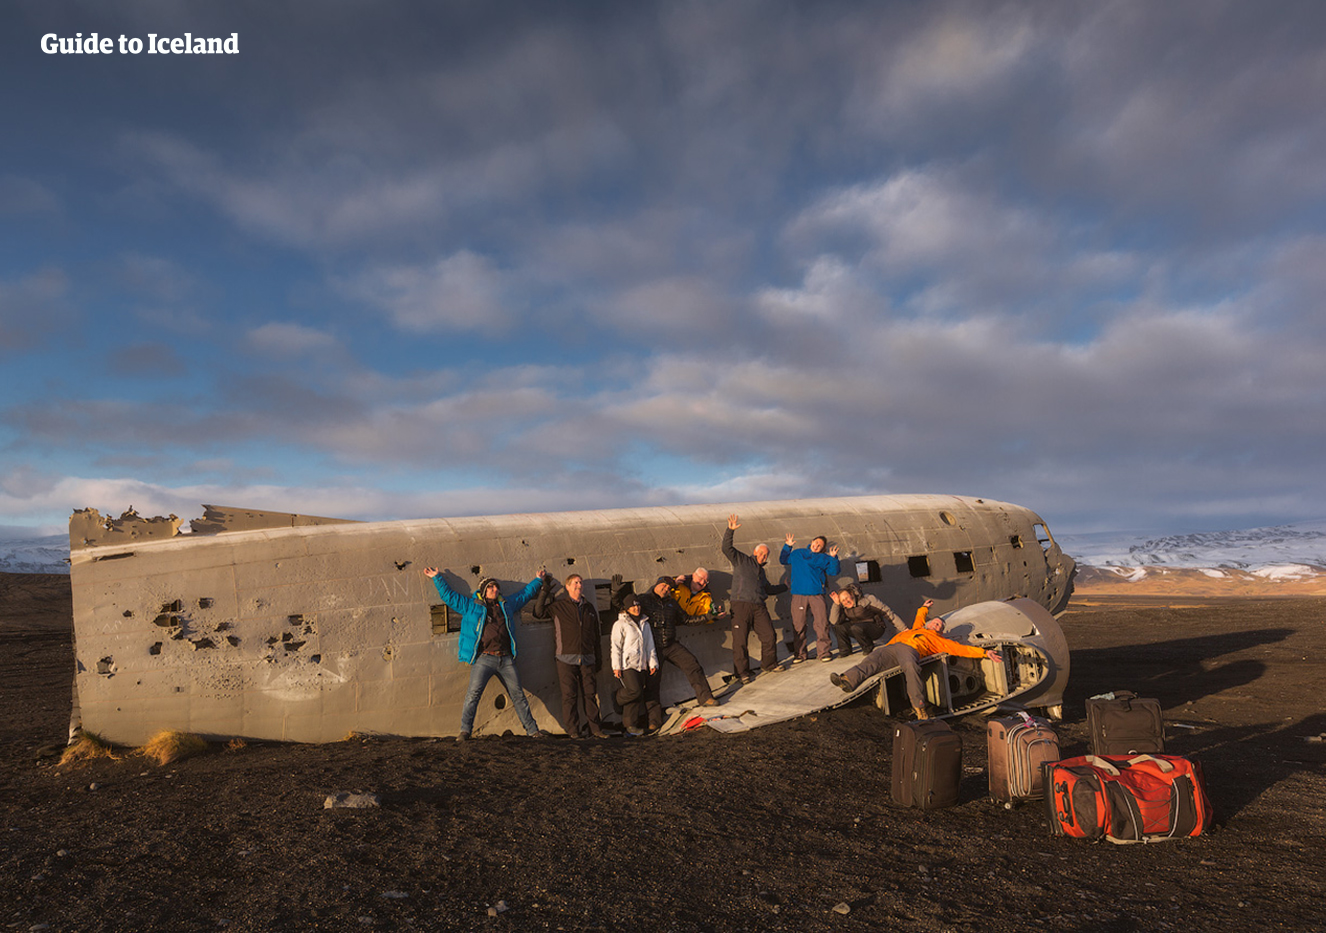 Al sur de Islandia, existen restos de un accidente de avión que pueden ser visitados